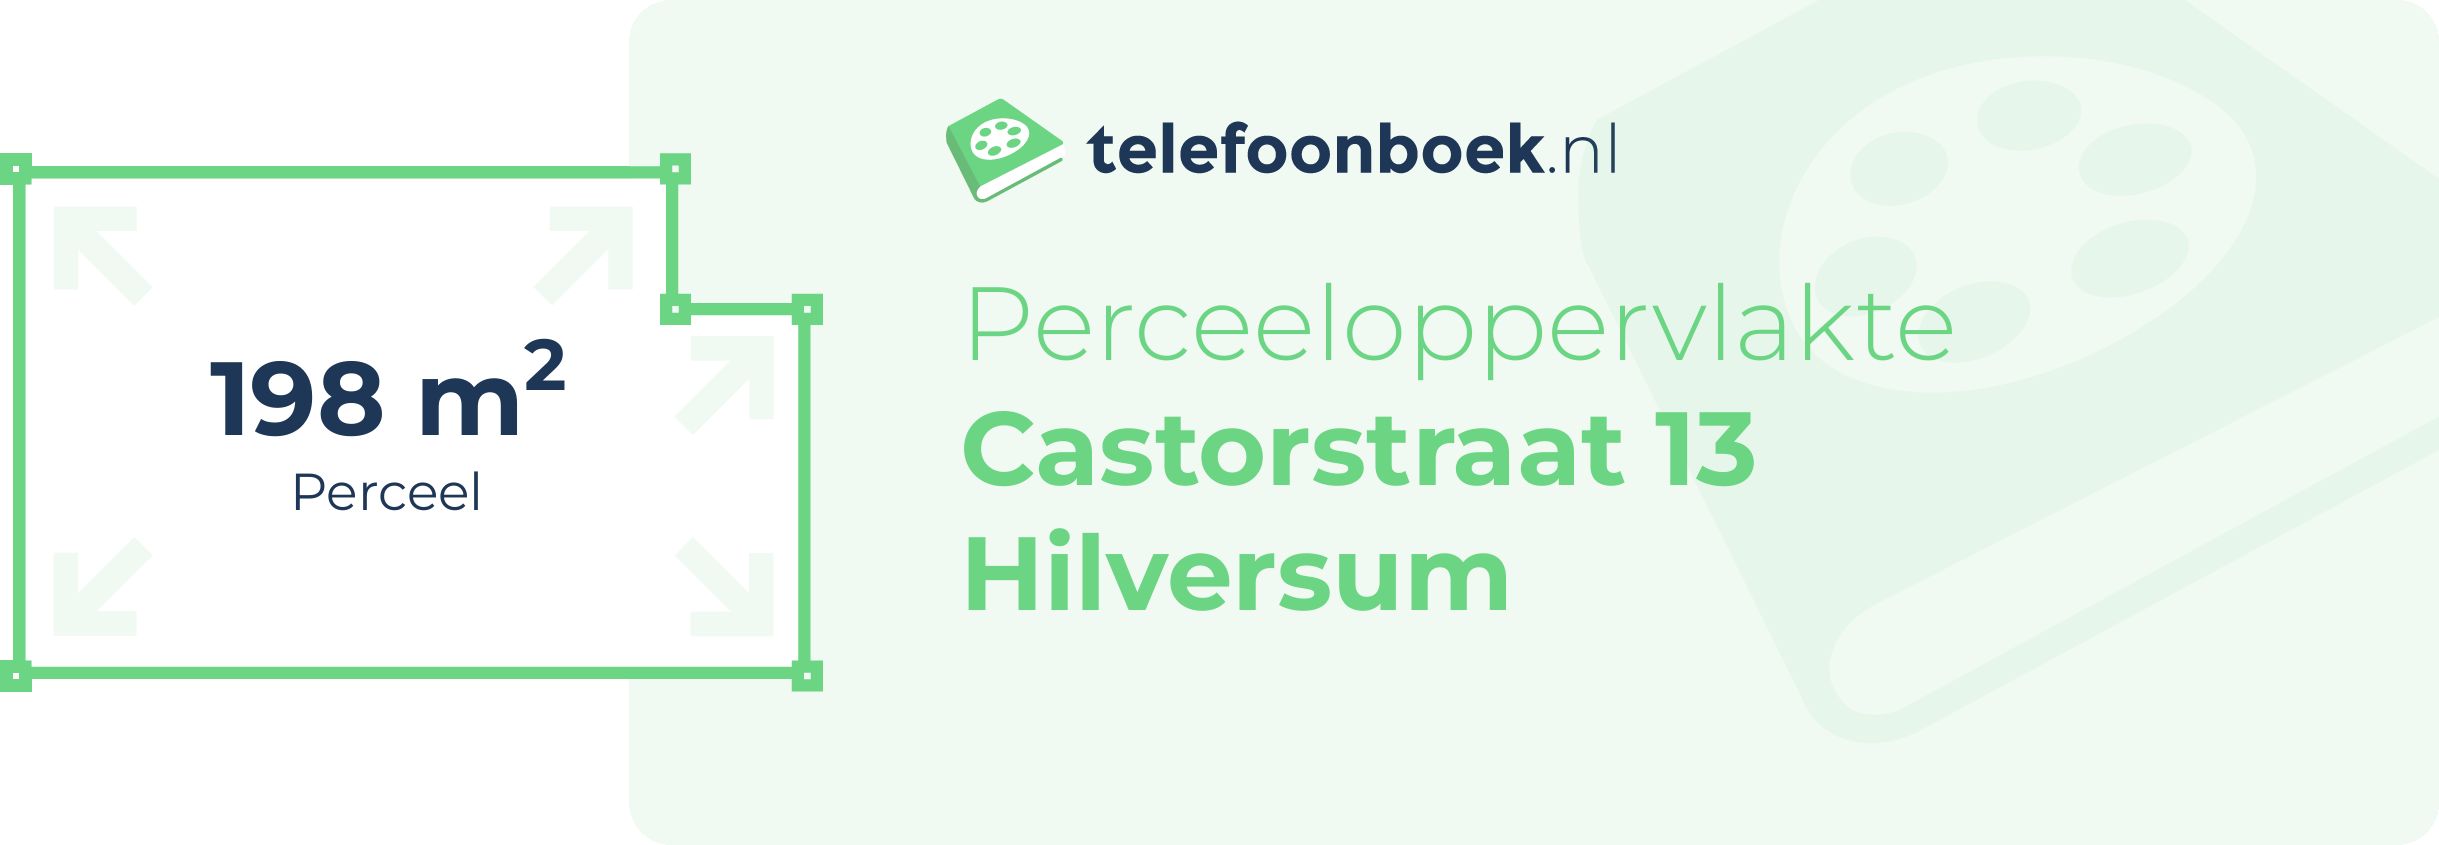 Perceeloppervlakte Castorstraat 13 Hilversum